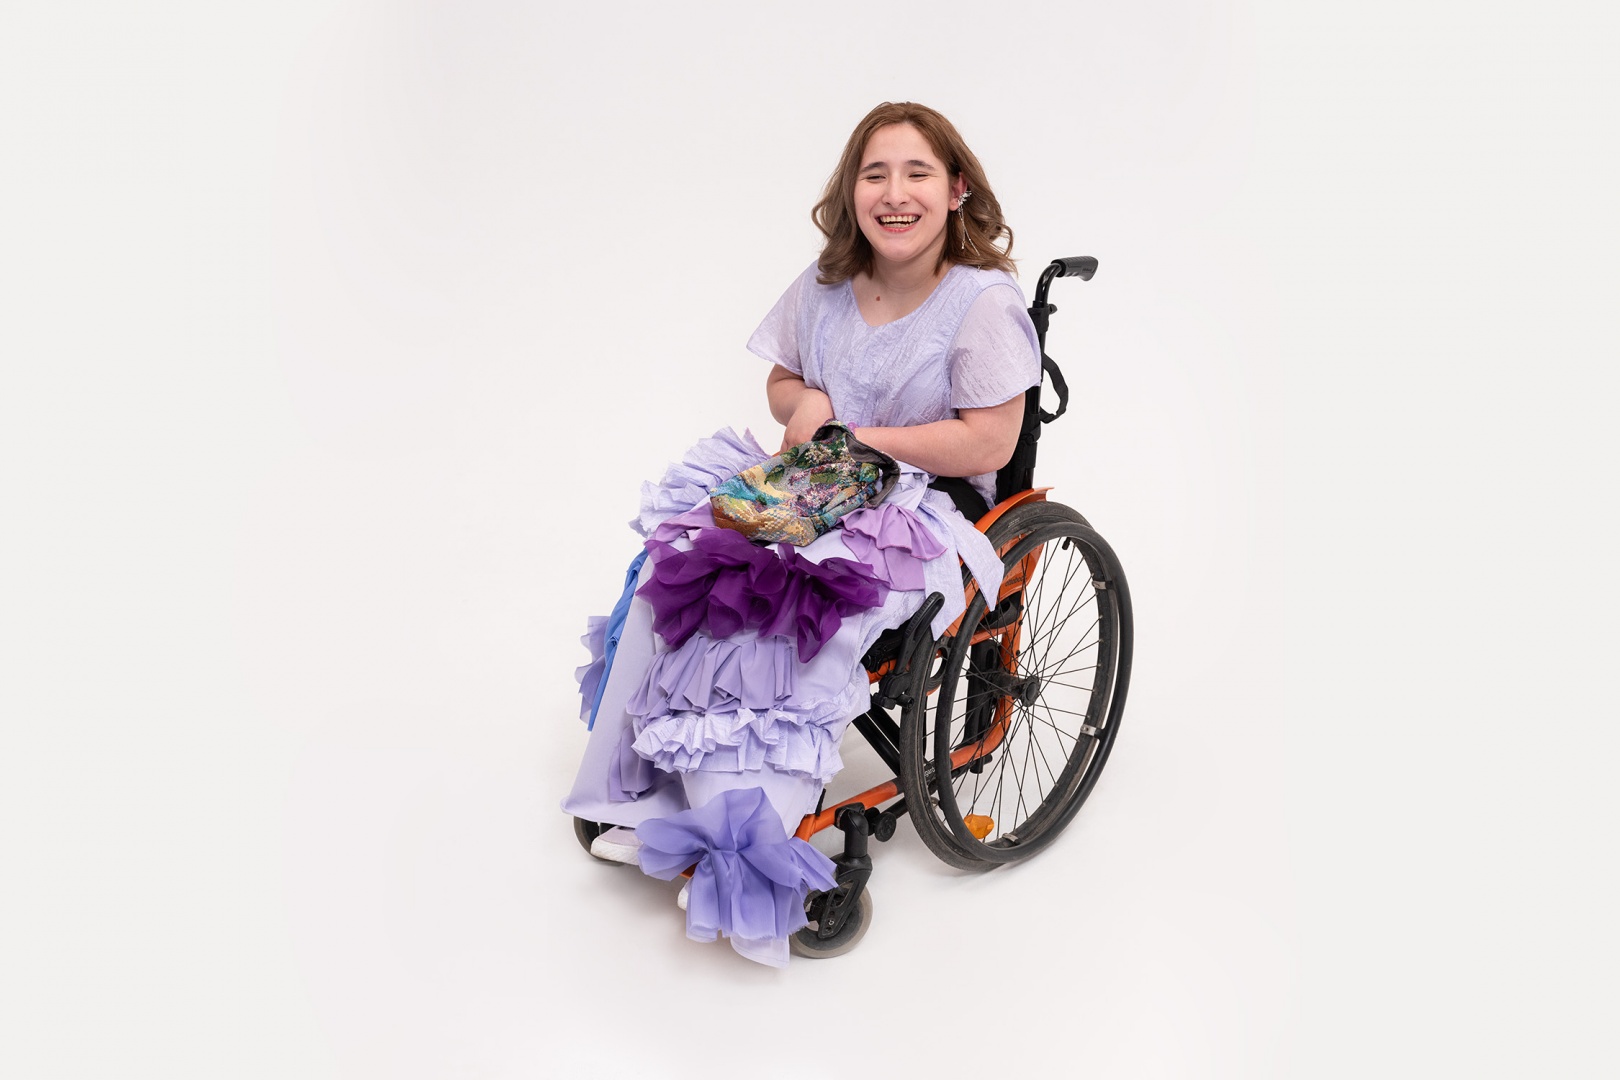 Студенты Британки придумали одежду для детей с церебральным параличом